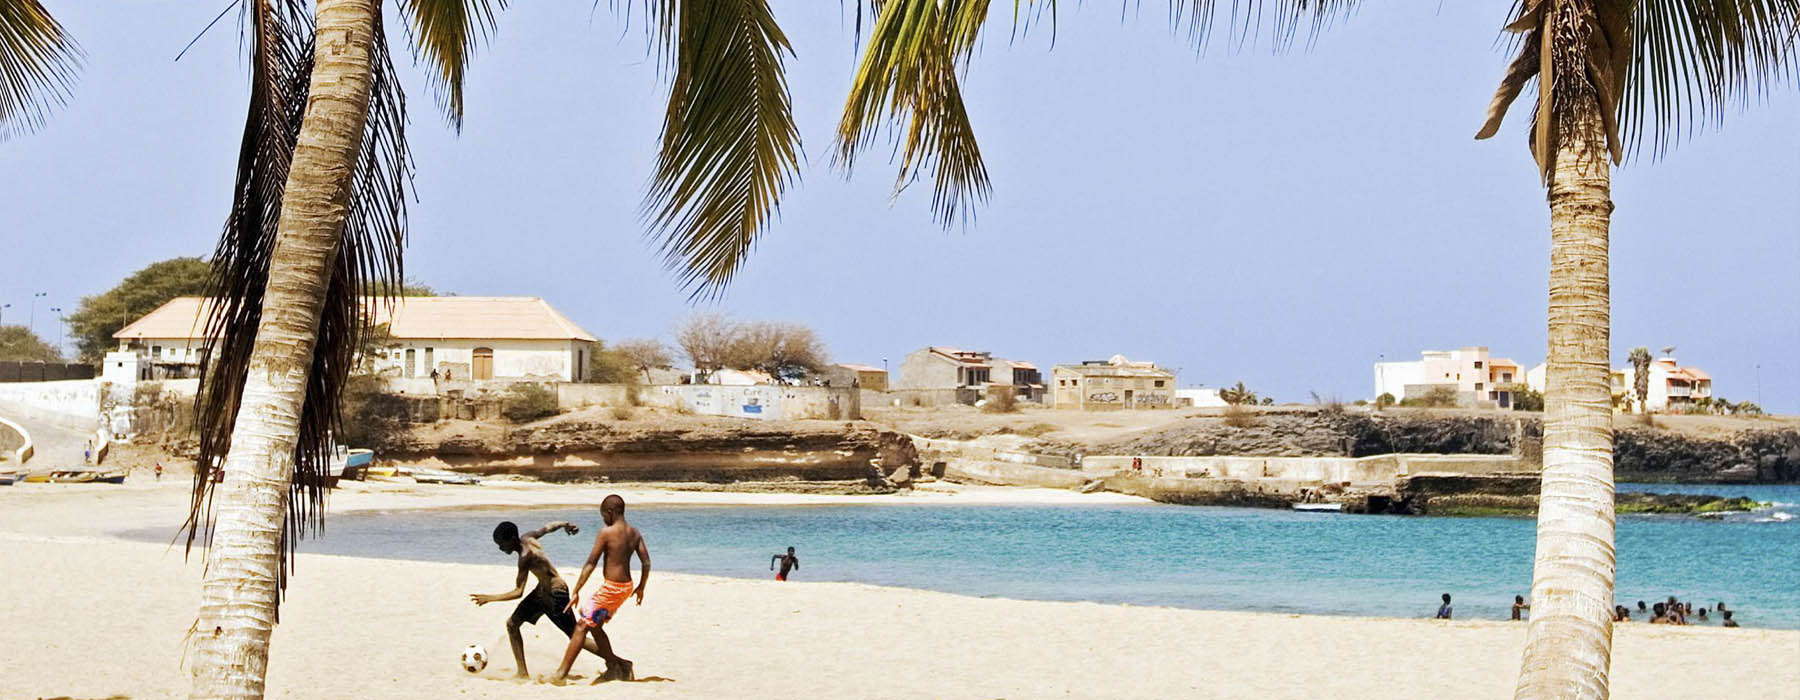 Vacances de février Cap Vert